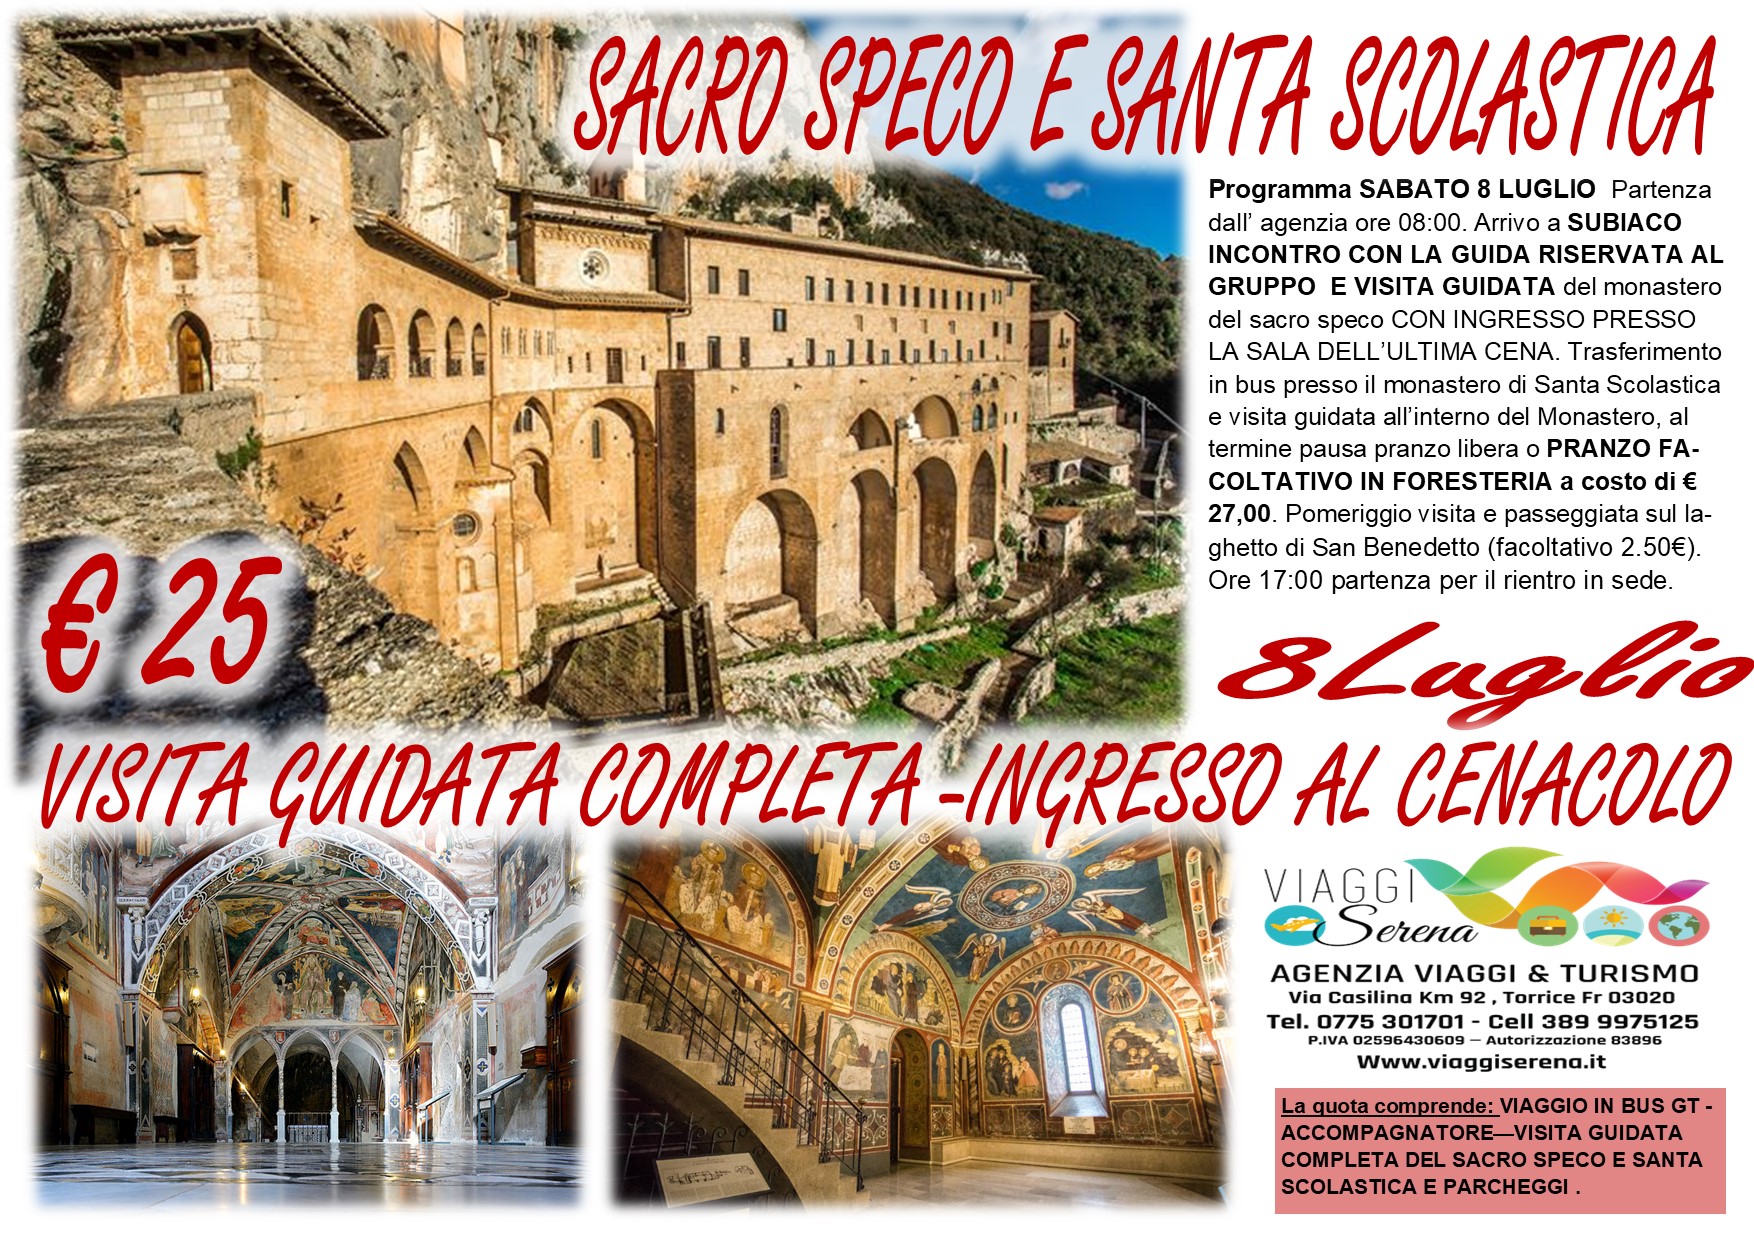 Viaggi di Gruppo: Subiaco “Sacro Speco & Santa Scolastica” 8 Luglio € 25,00